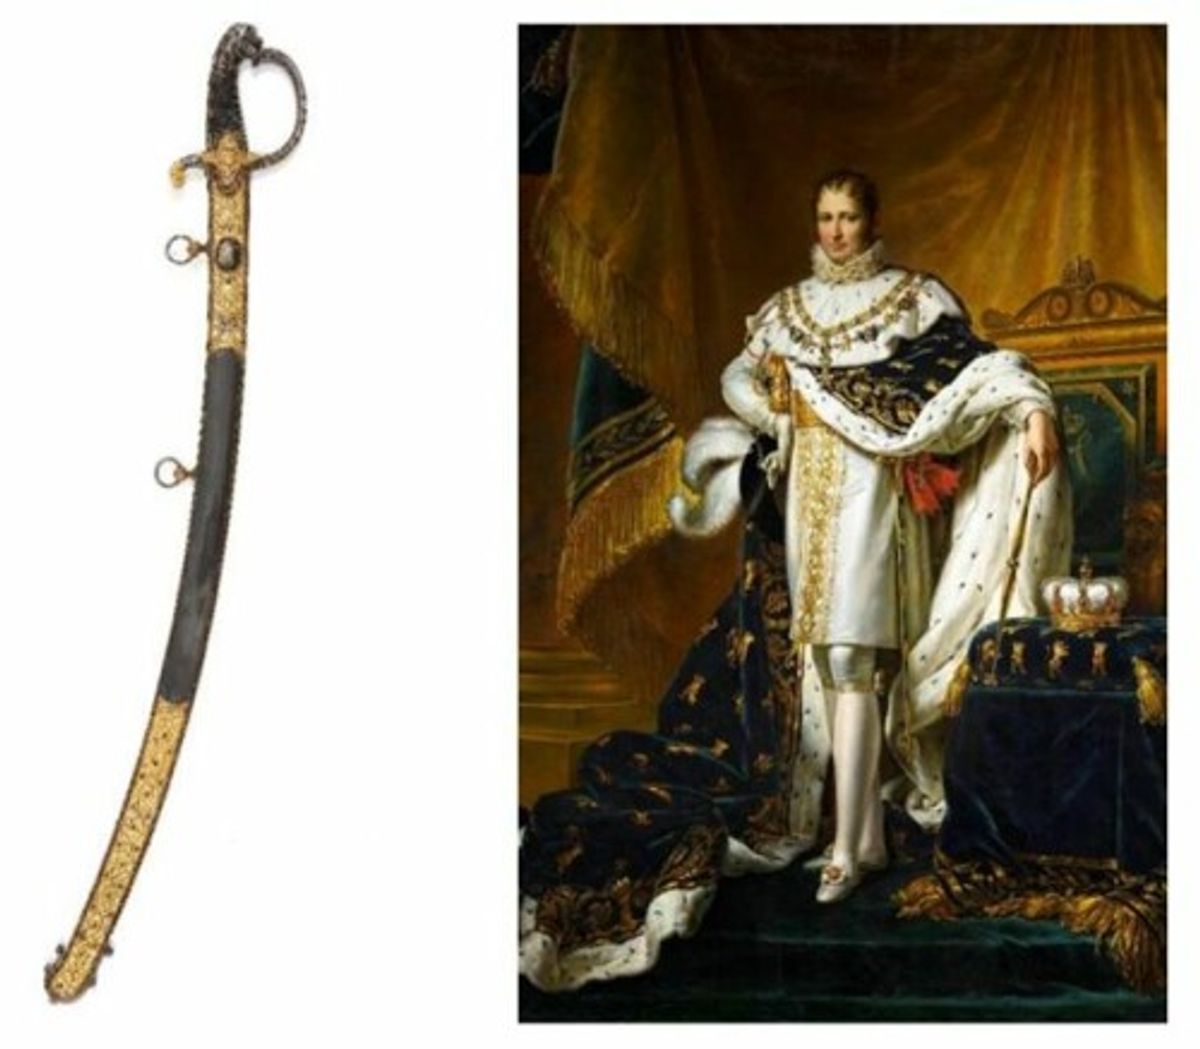 紀念拿破侖逝世200周年 - 罕見拿破侖寳劍將於10月27日現身拍賣會 香港收藏家機不可失!